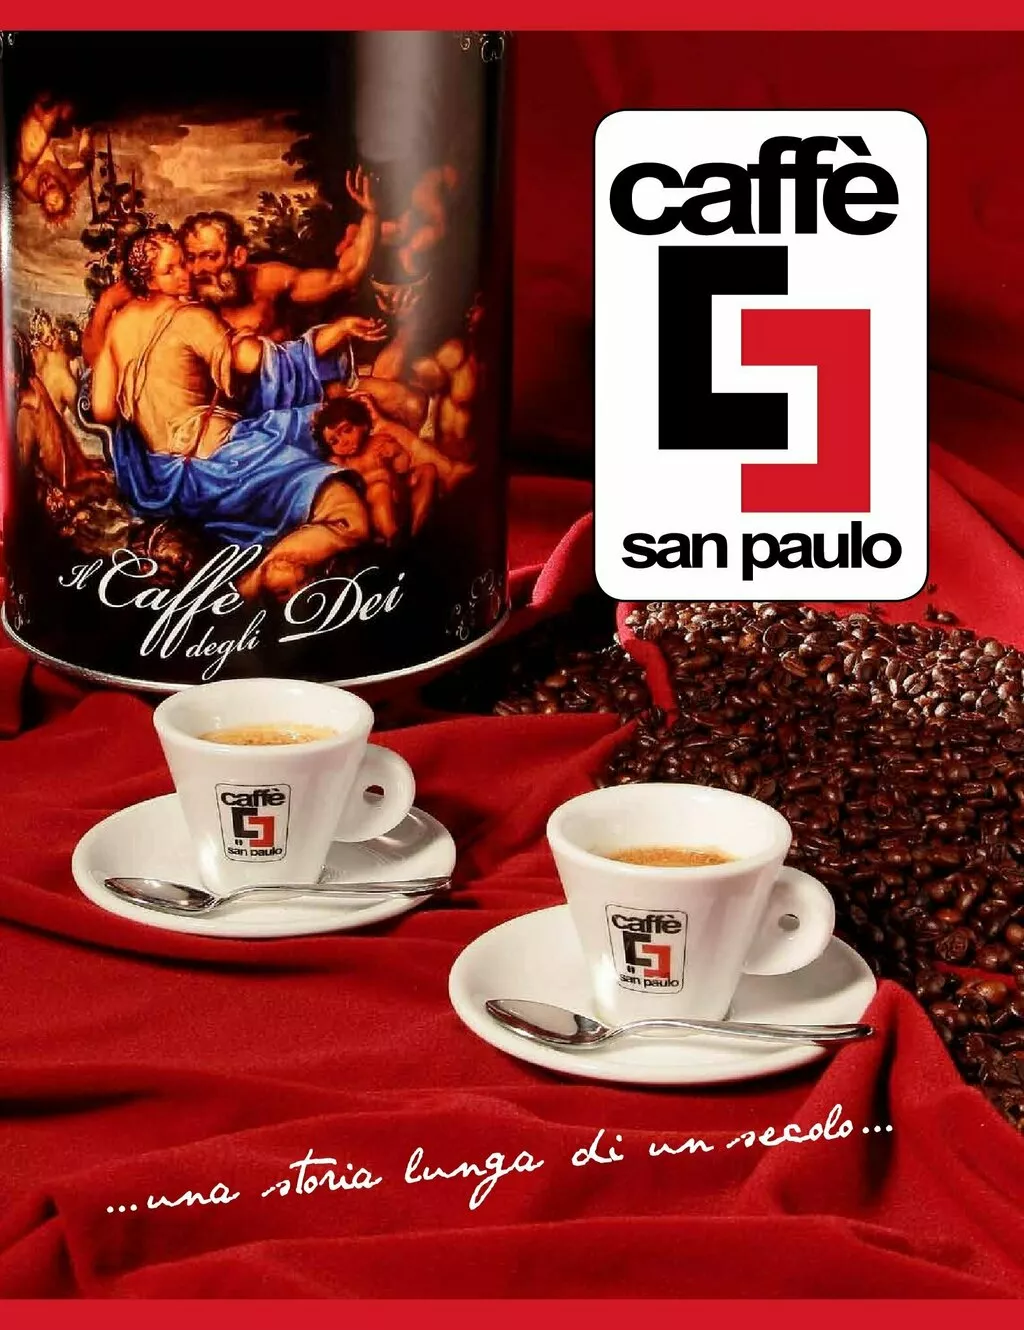 кофе сaffe san paulo на условиях exw в Италии